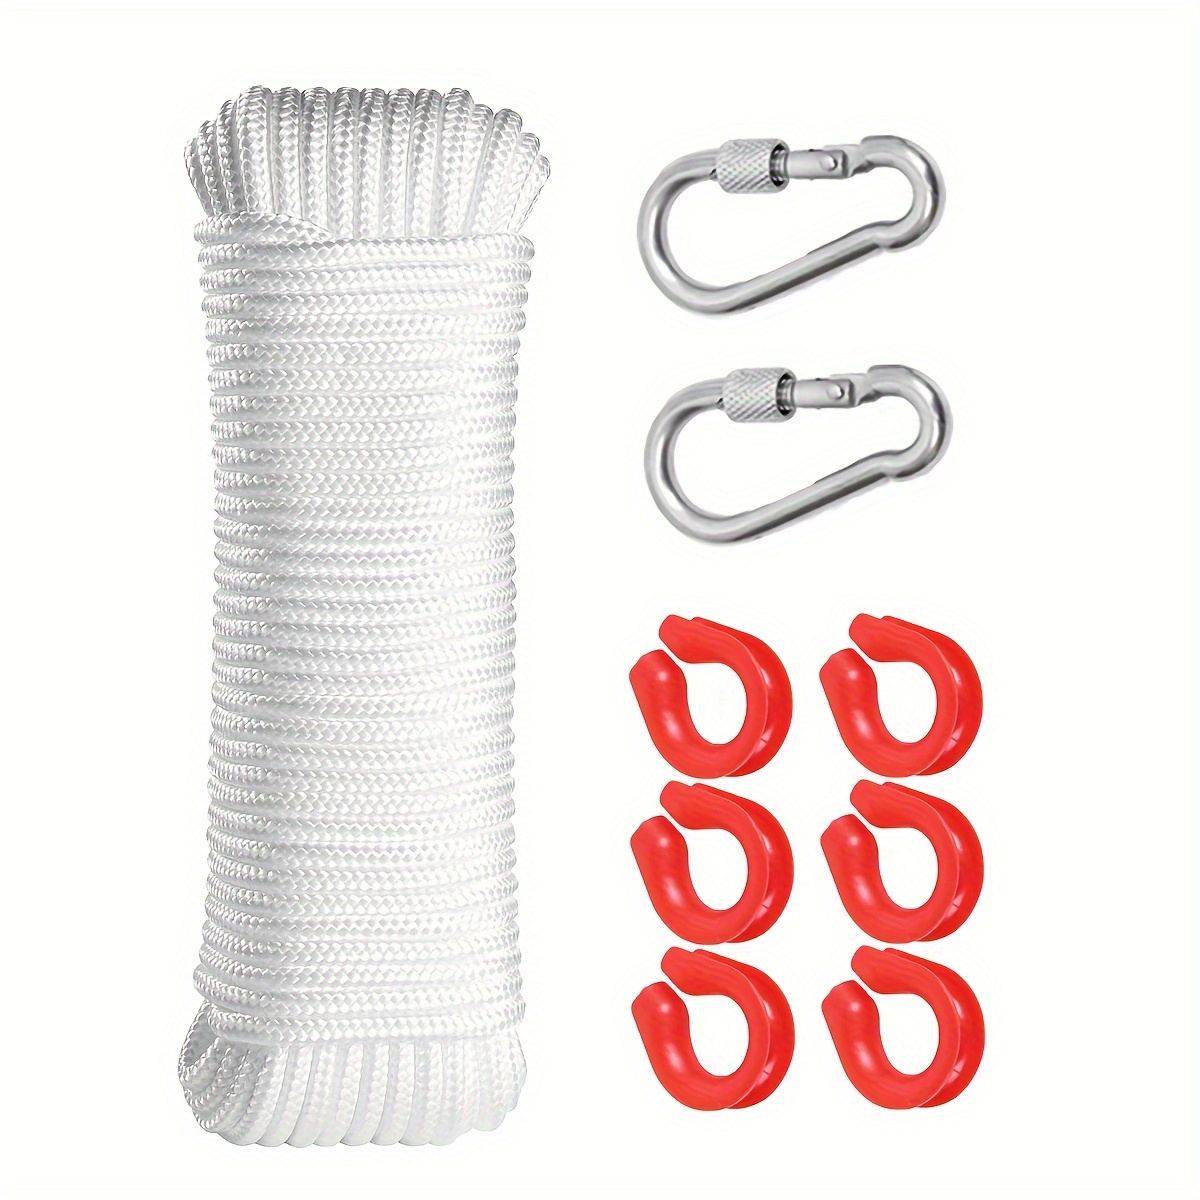 Multipurpose Nylon Rope Uv Resistant Excellent Shock - Temu